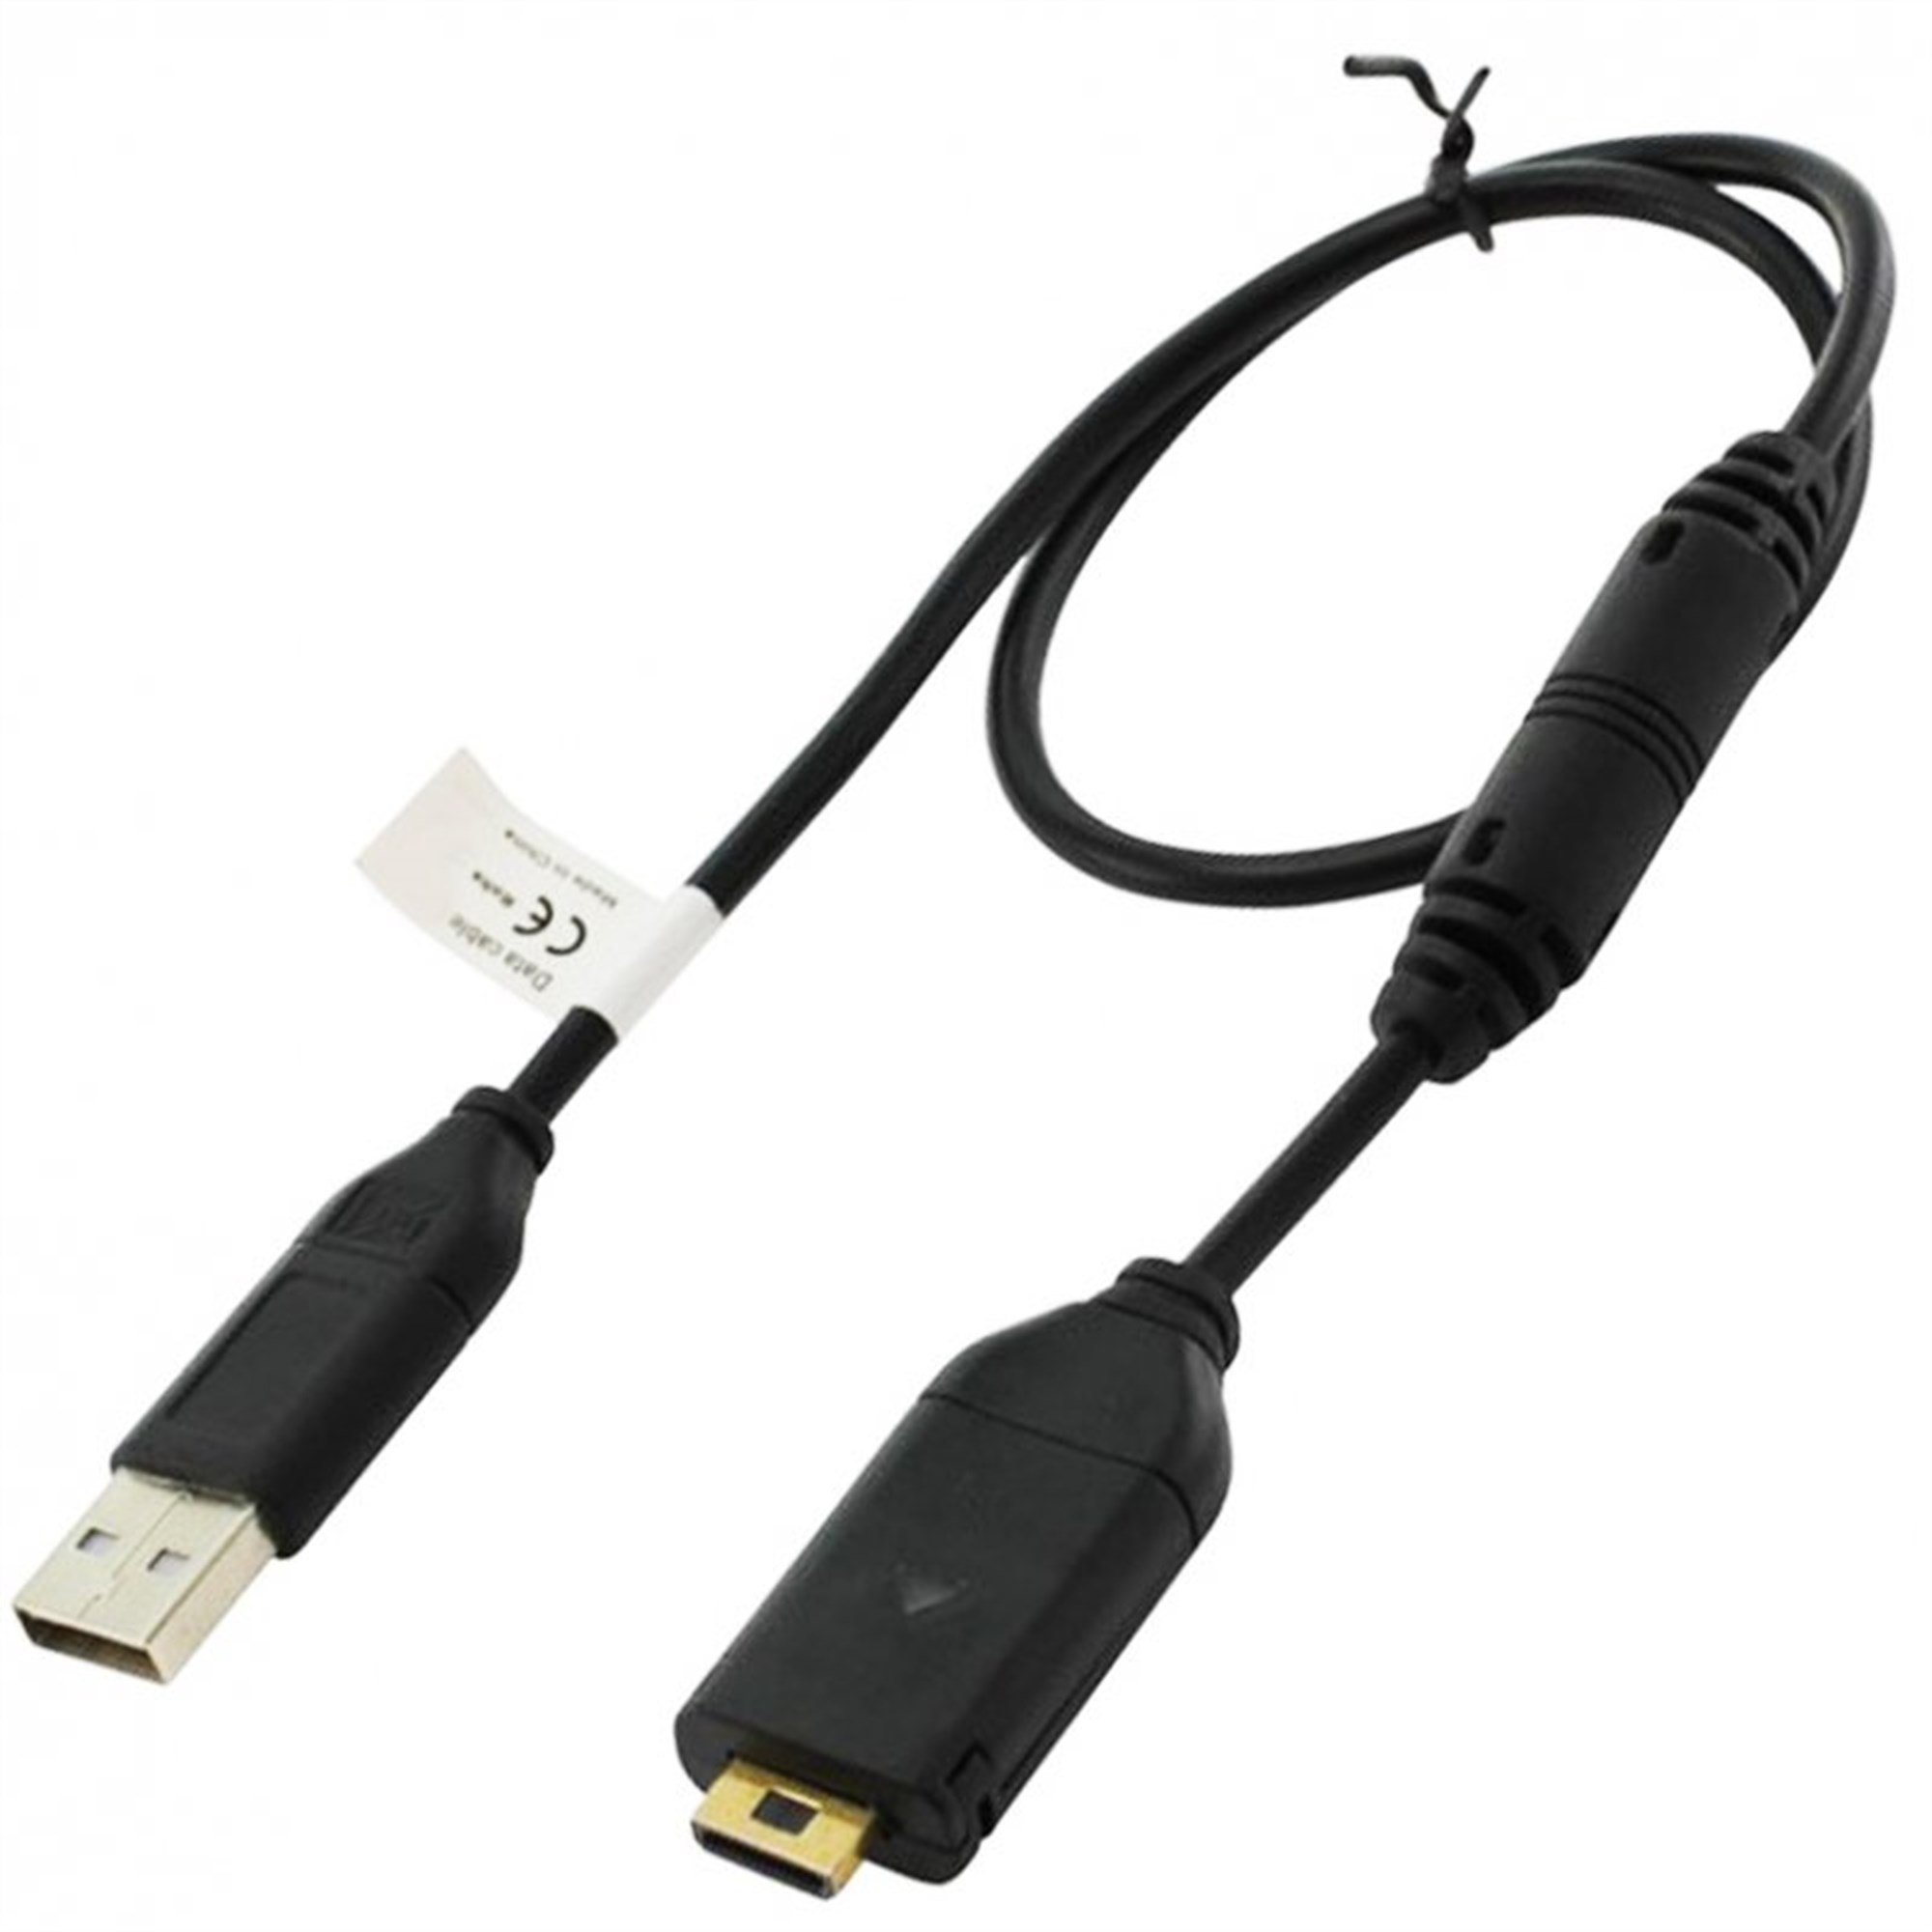 Samsung SUC-C4 kablosu için yedek kablo olarak uygun USB kablosu